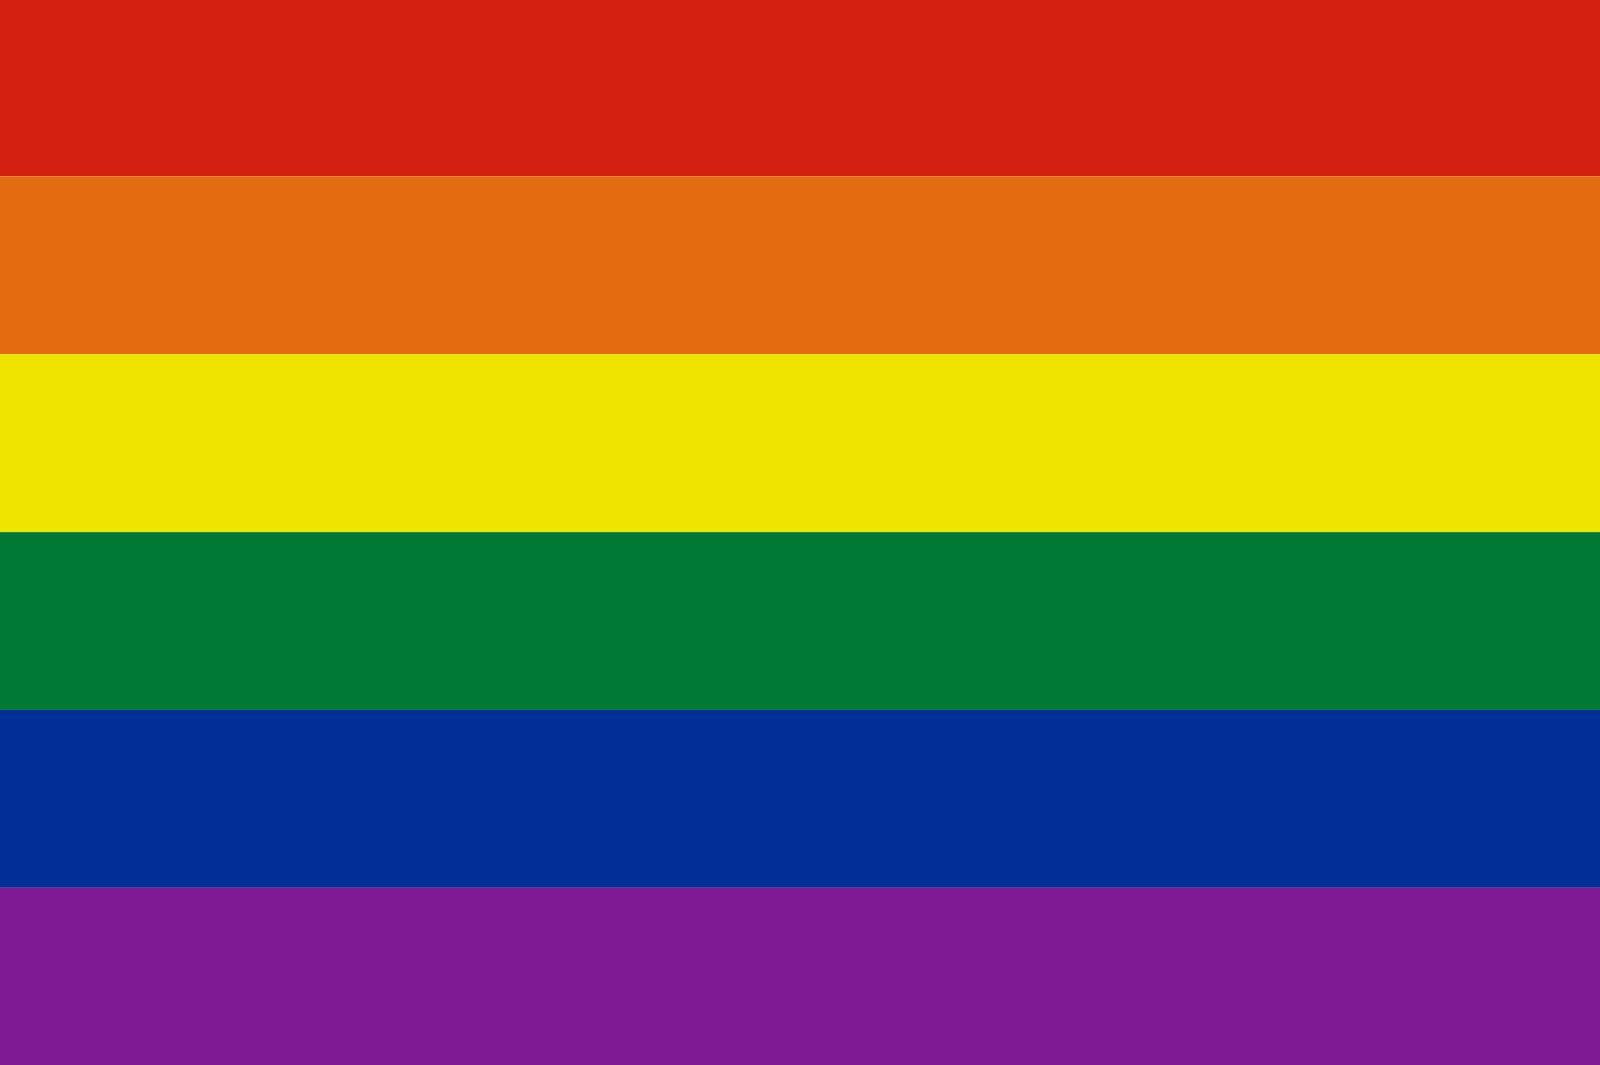 80 Regenbogen flaggenmeer Flagge g/m²